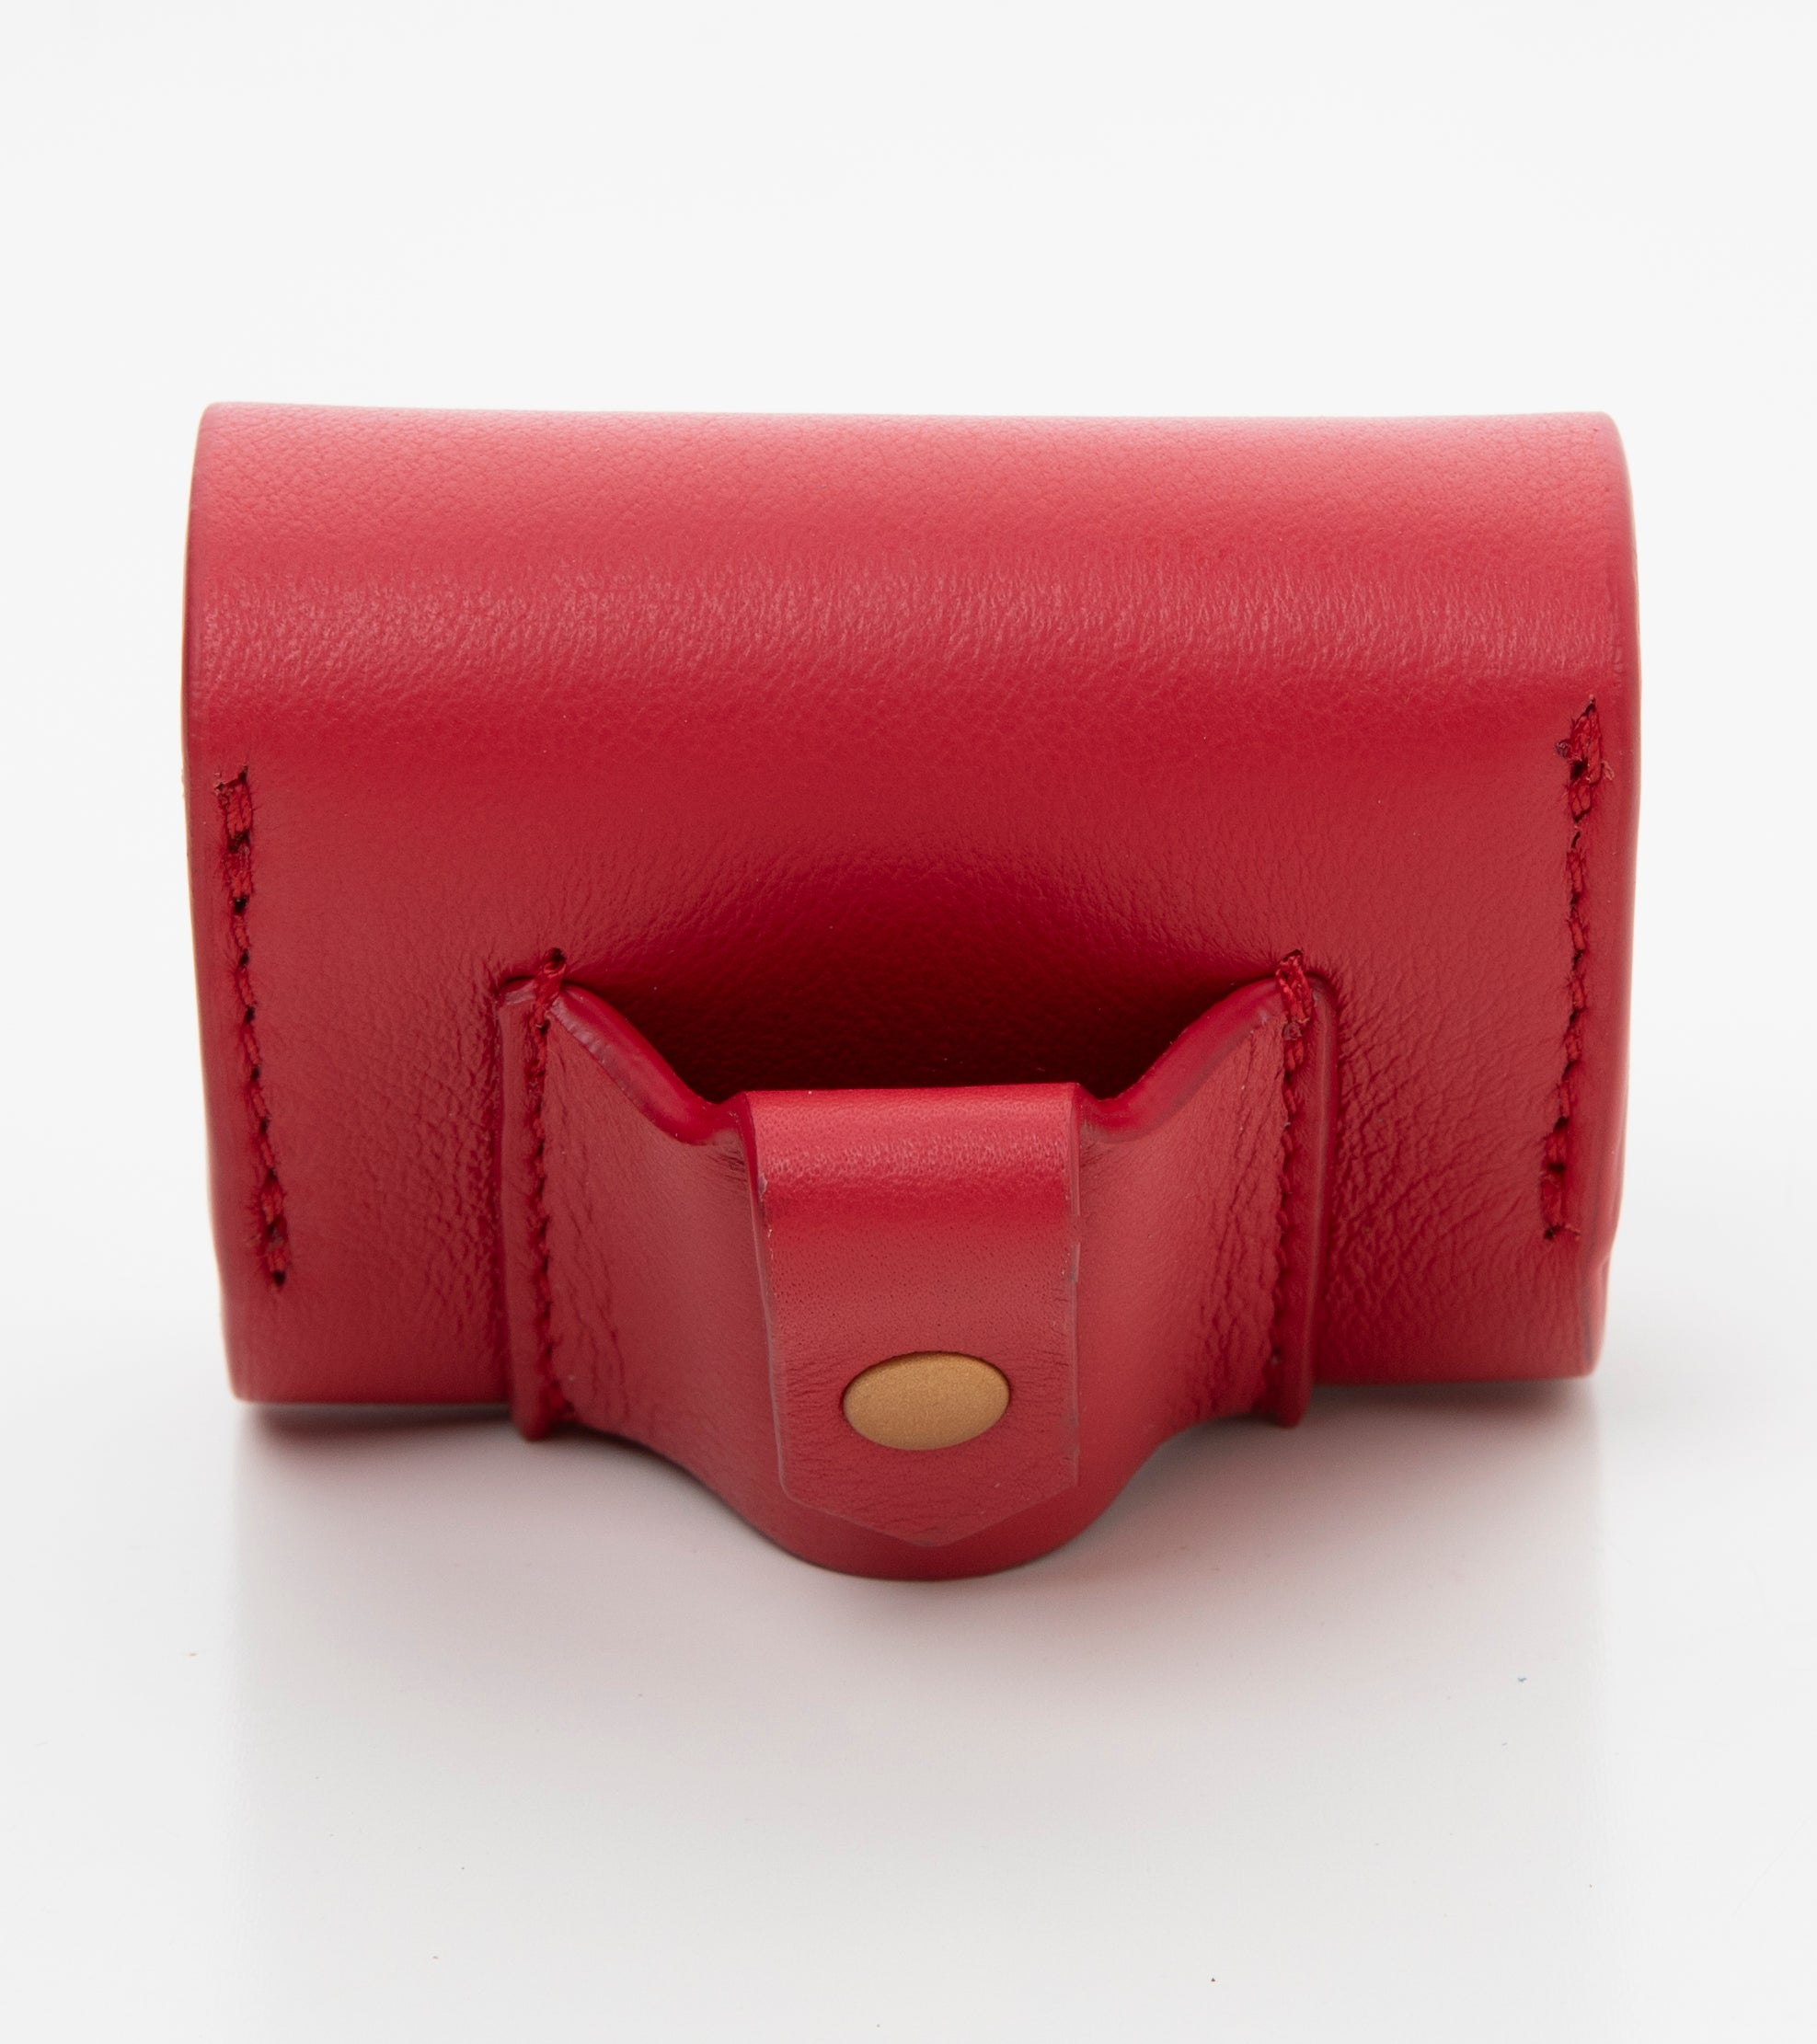 red-leather-poop-bag-holder-4.jpg